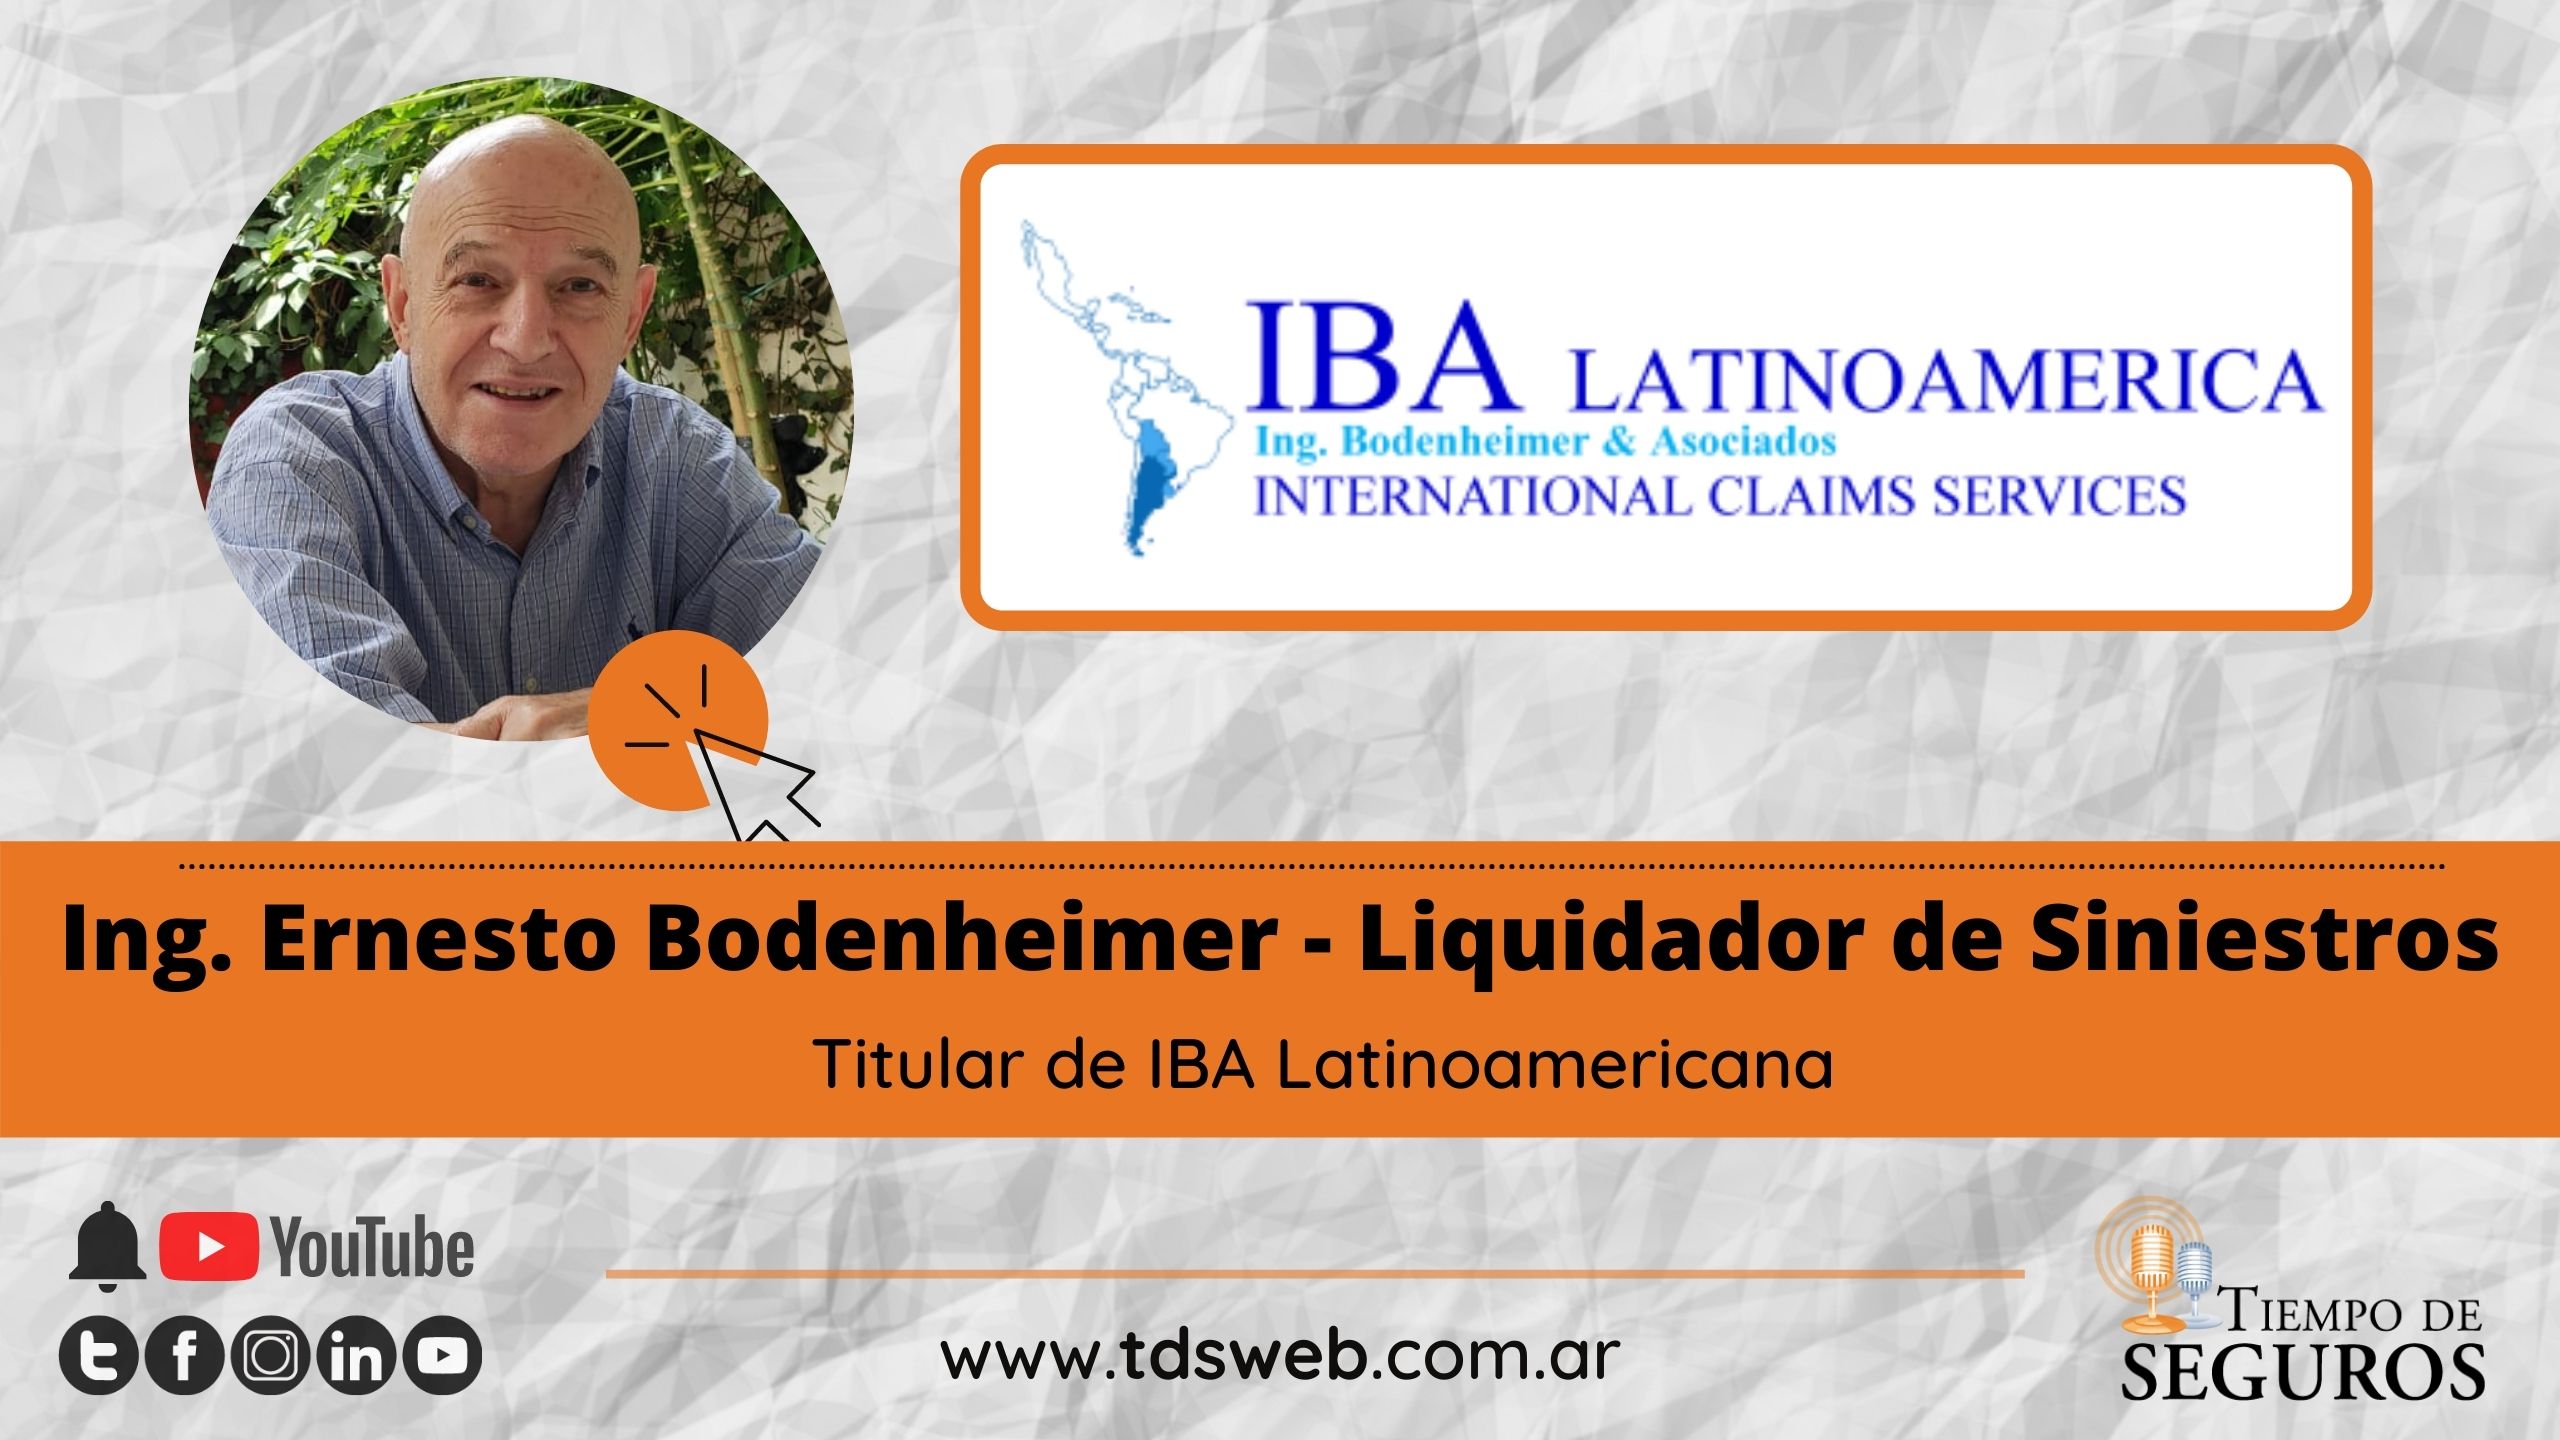 Entrevistamos al Ing. Ernesto Bodenheimer, Liquidador de siniestros, titular de IBA LATINOAMÉRICA S.A. para conocer acerca de los daños por vientos y fenómenos climáticos y la cobertura de los mismos.